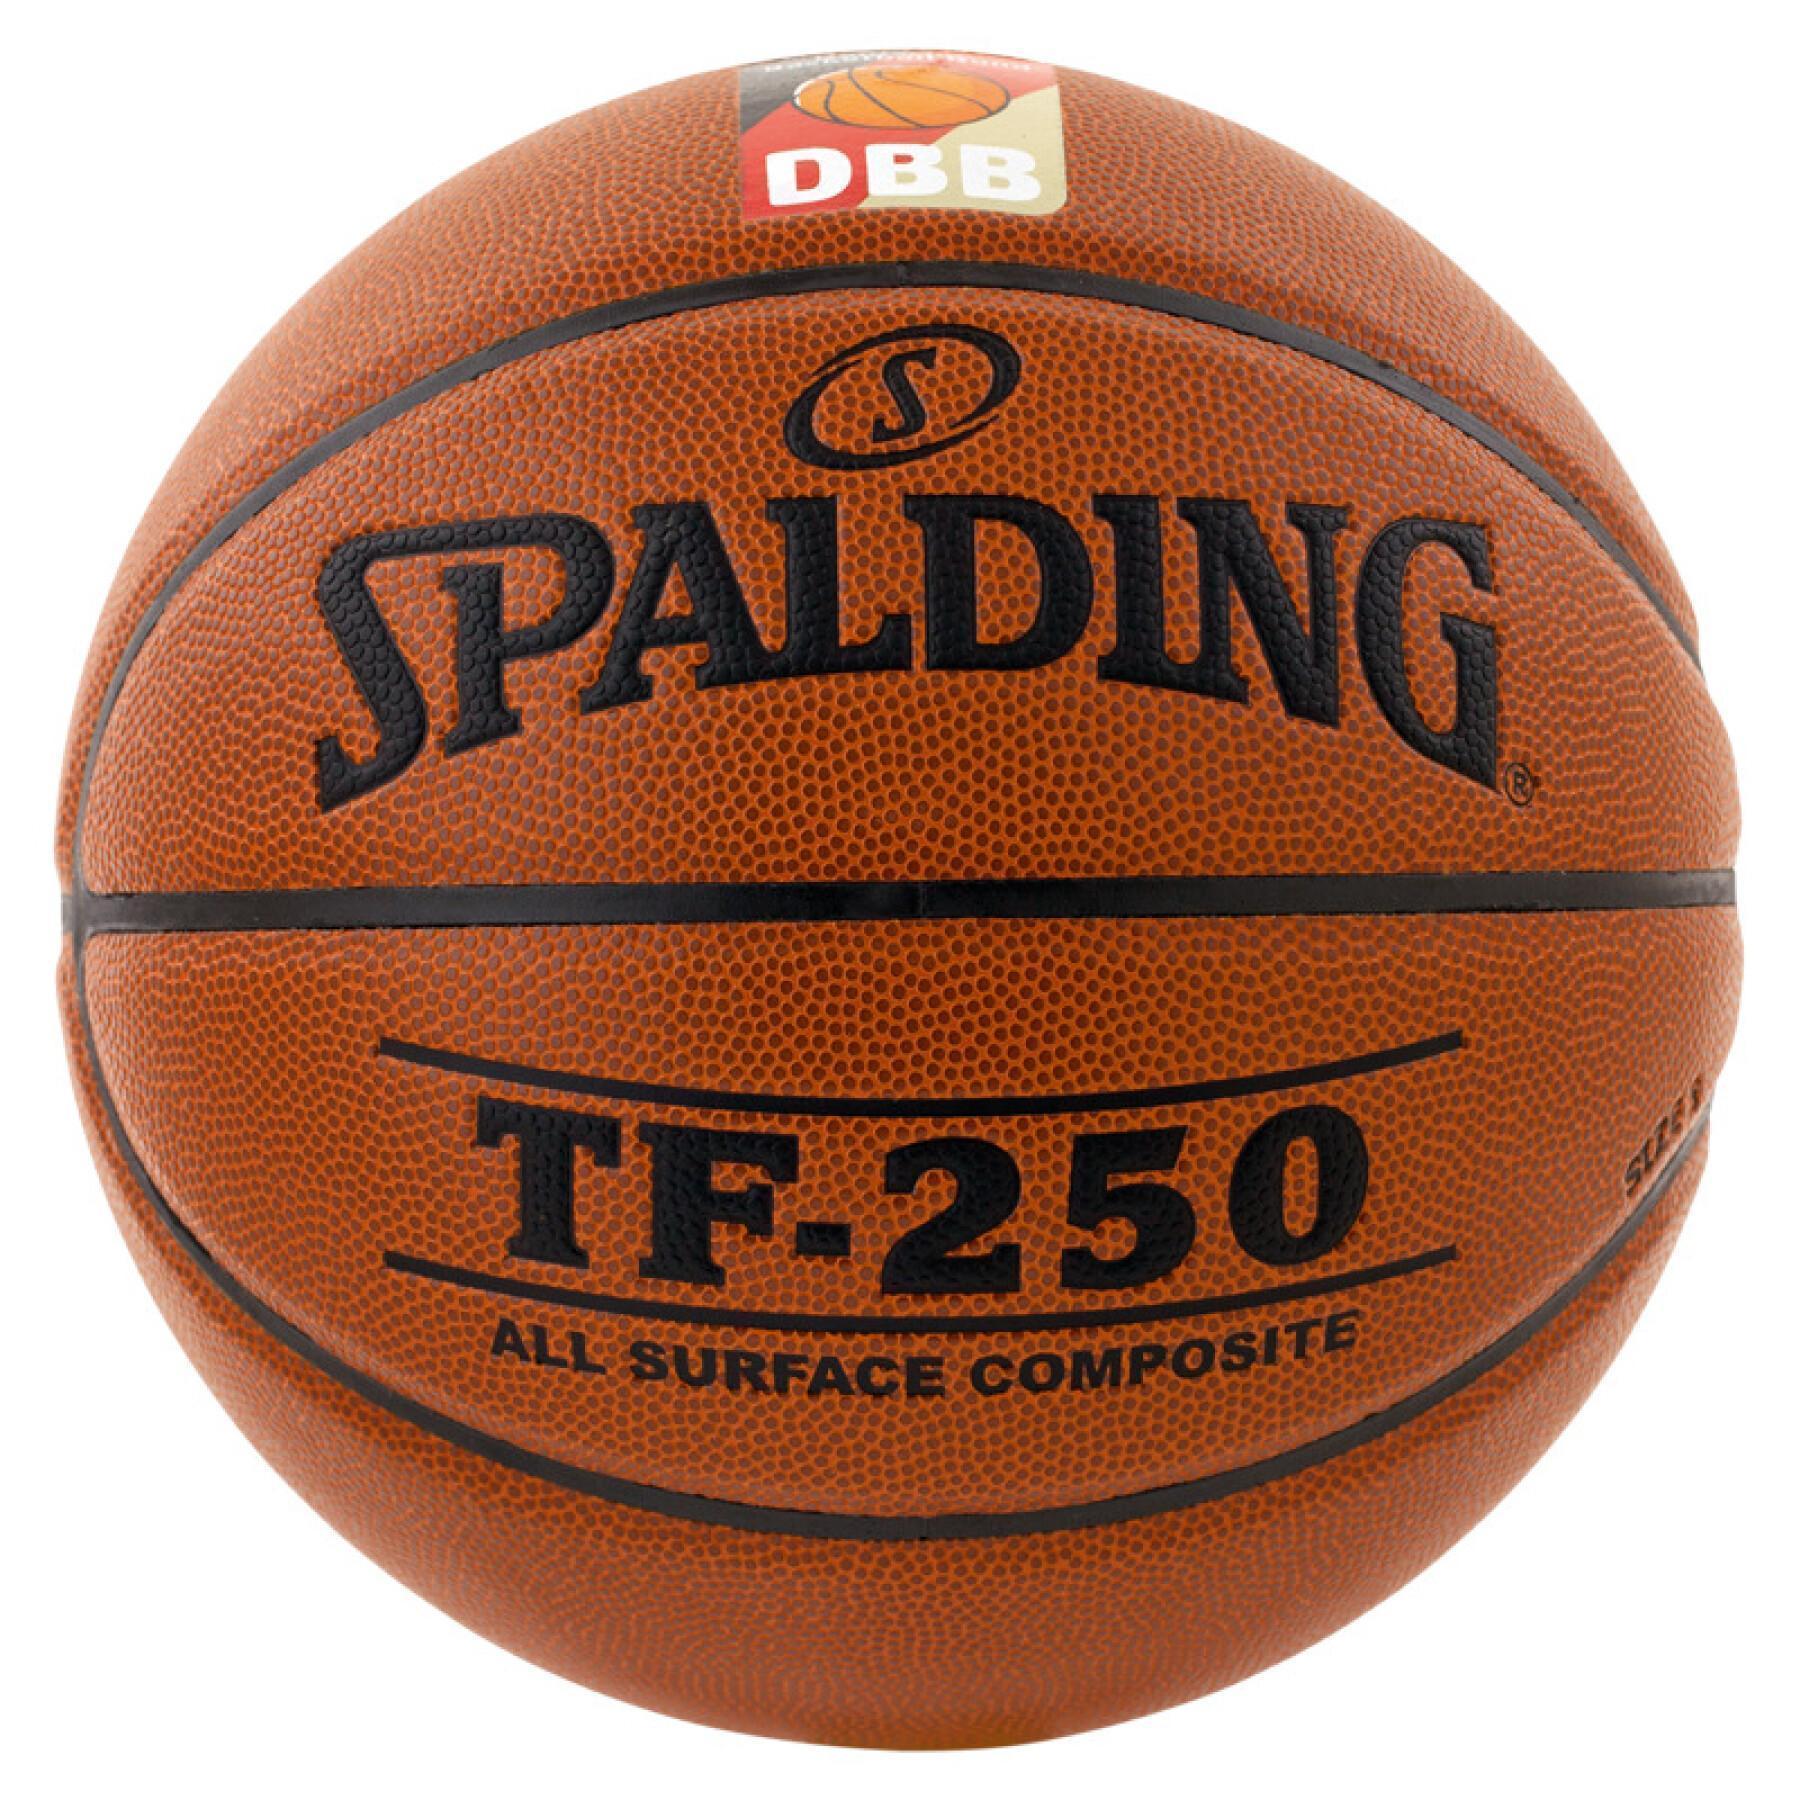 Globo Spalding DBB Tf250 (74-594z)